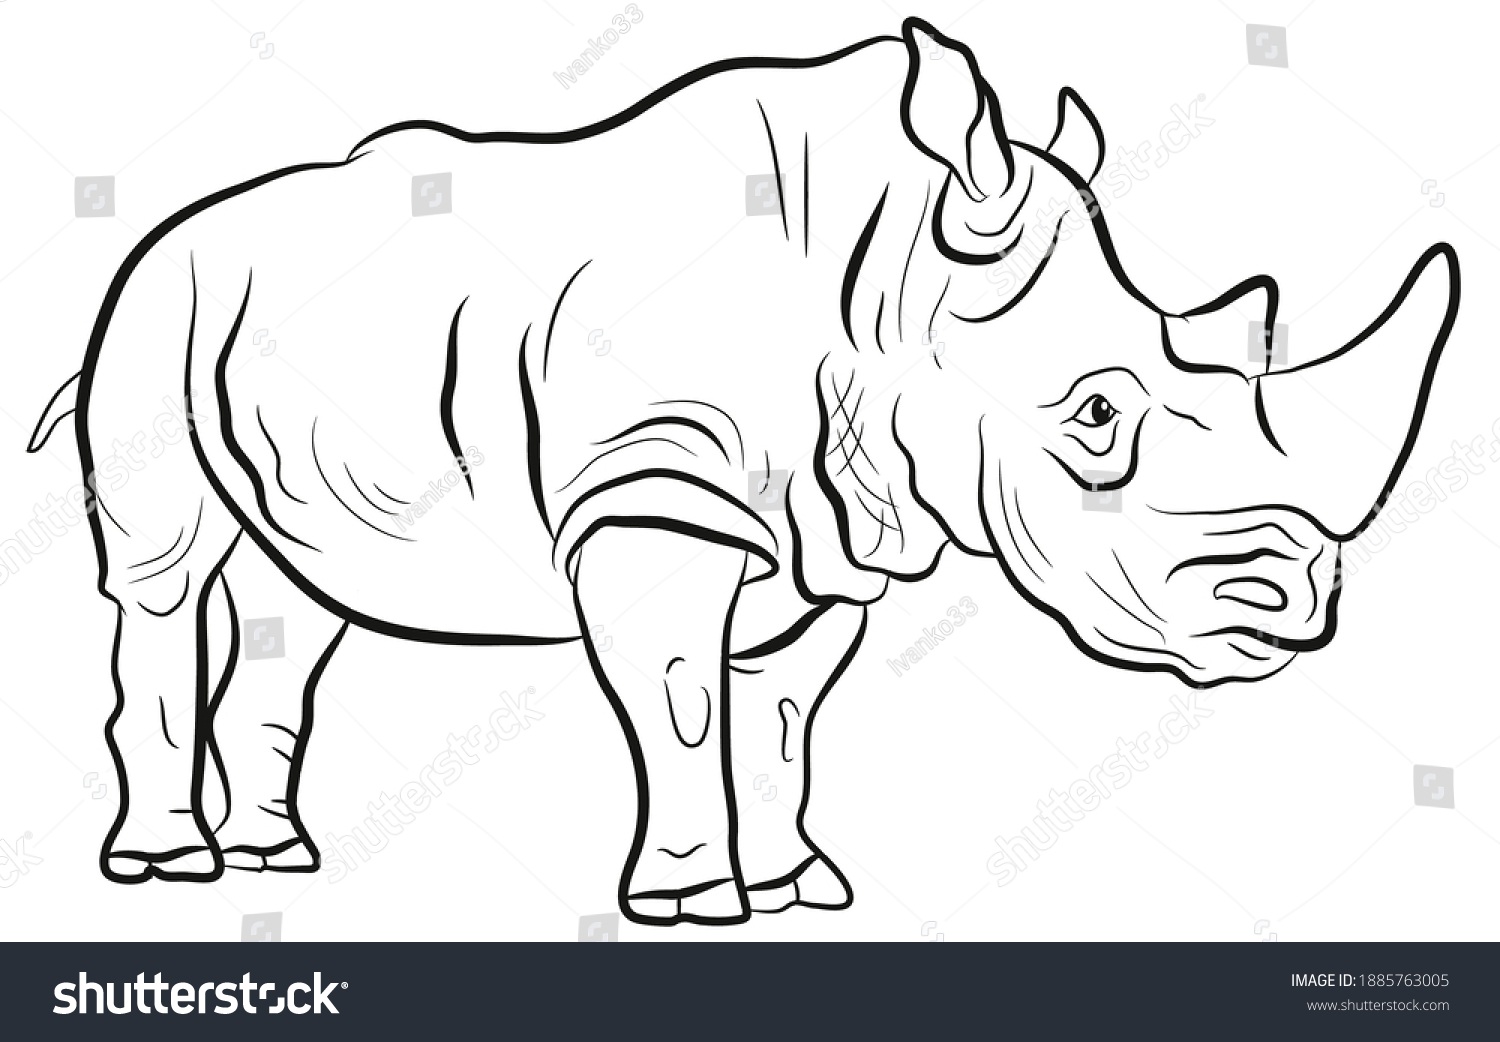 Раскраска яркий шерстистый носорог